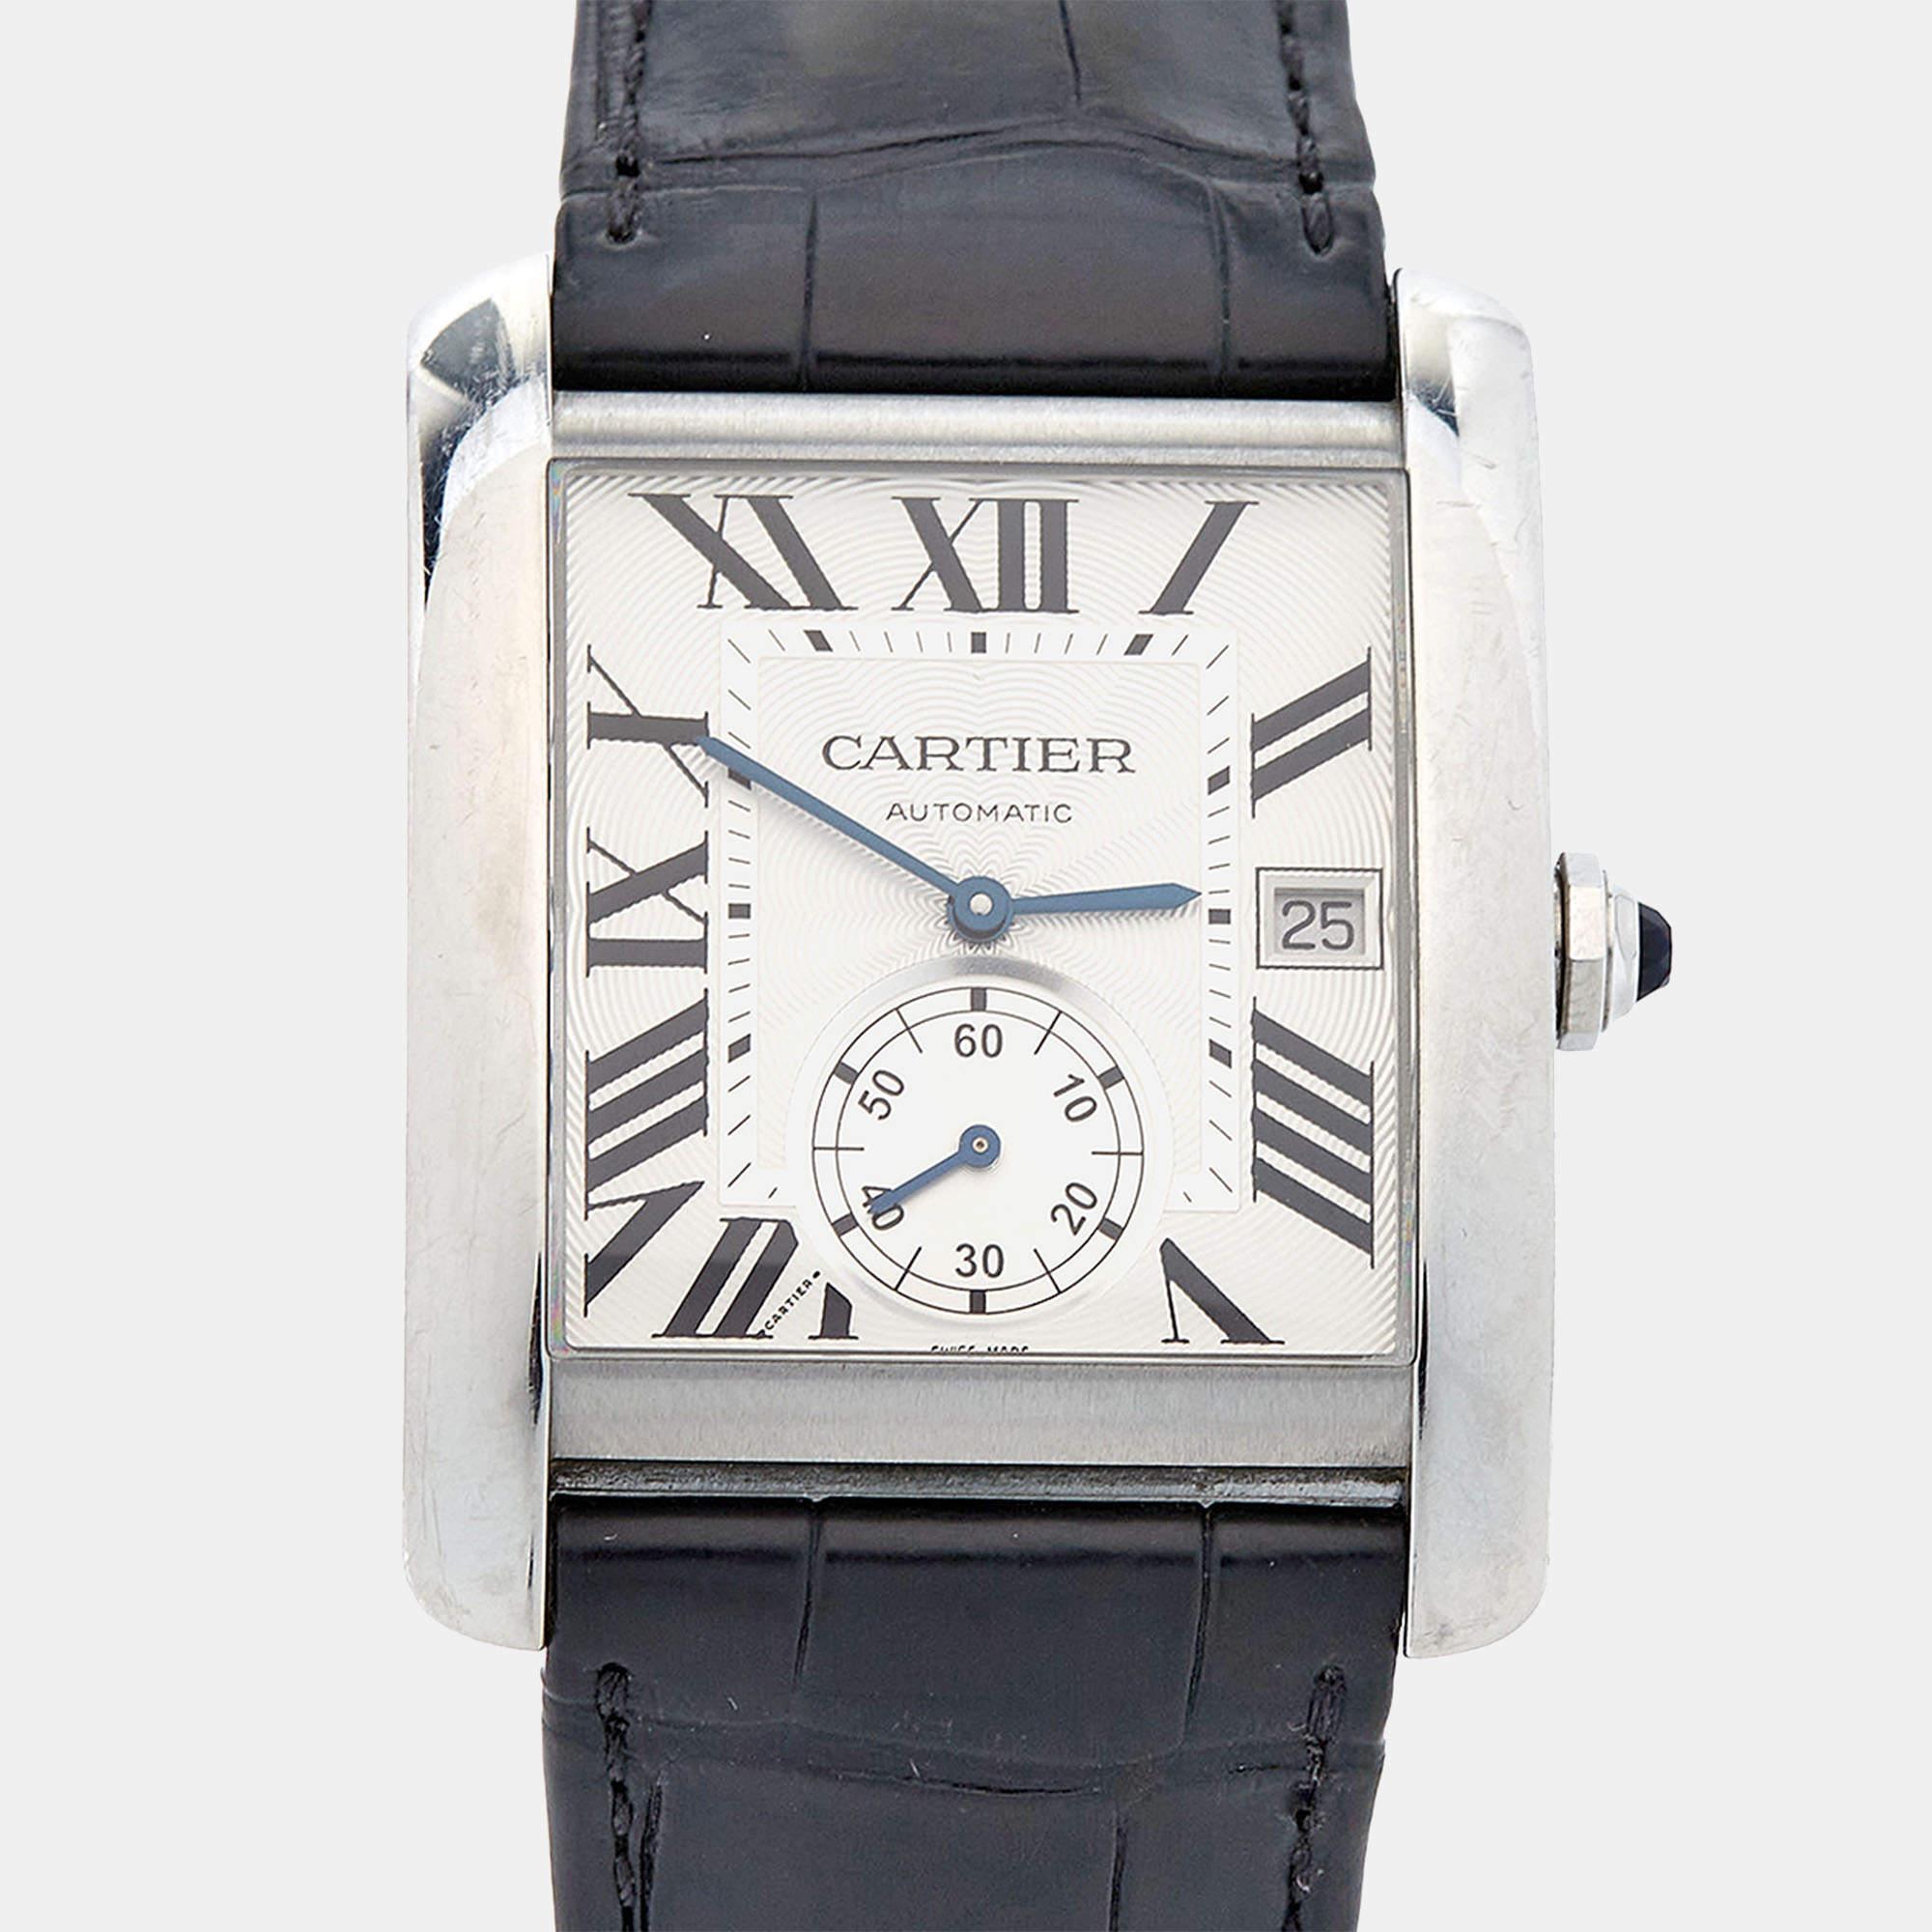 Voici votre chance d'ajouter la magnifique montre Tank MC W5330003 de Cartier à votre précieuse collection de montres. Elle possède un boîtier carré en acier inoxydable, un spinelle synthétique en forme de cabochon sur la couronne et un bracelet en